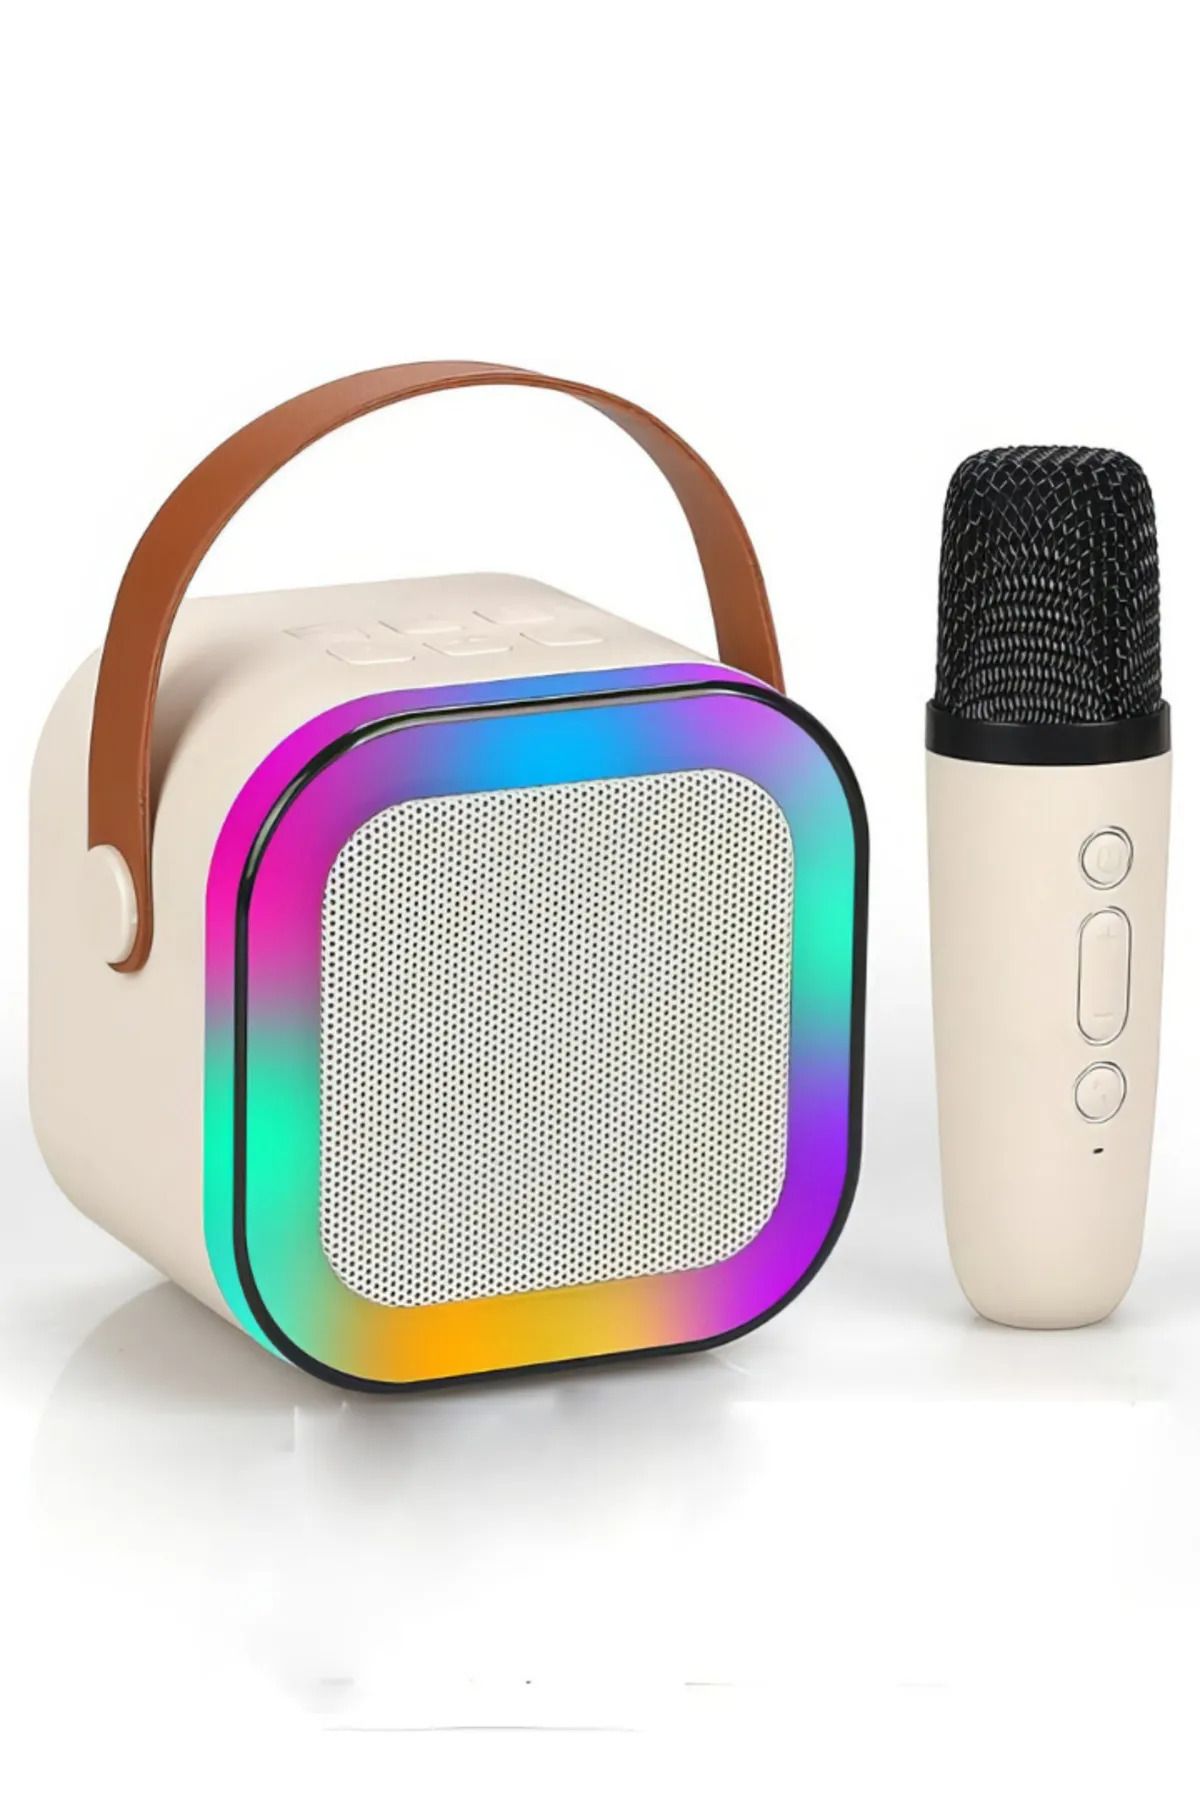 ANI OFİS KIRTASİYE Portatif Taşınabilir Işıklı Mikrofonlu Çocuk Karaoke Hoparlör Seti